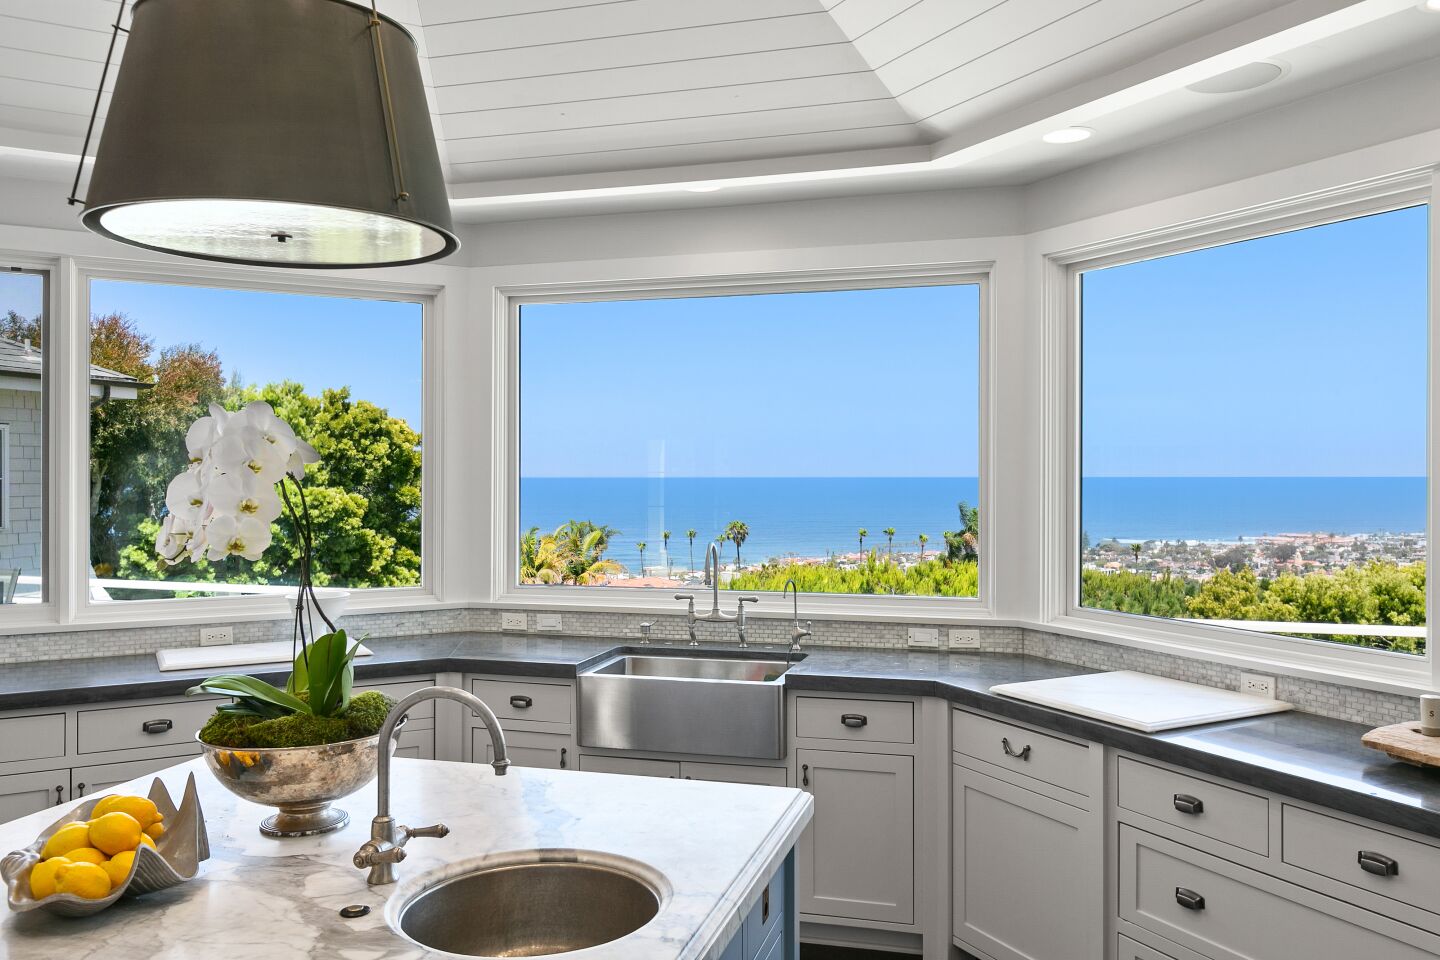 Kitchen with Ocean View.jpg